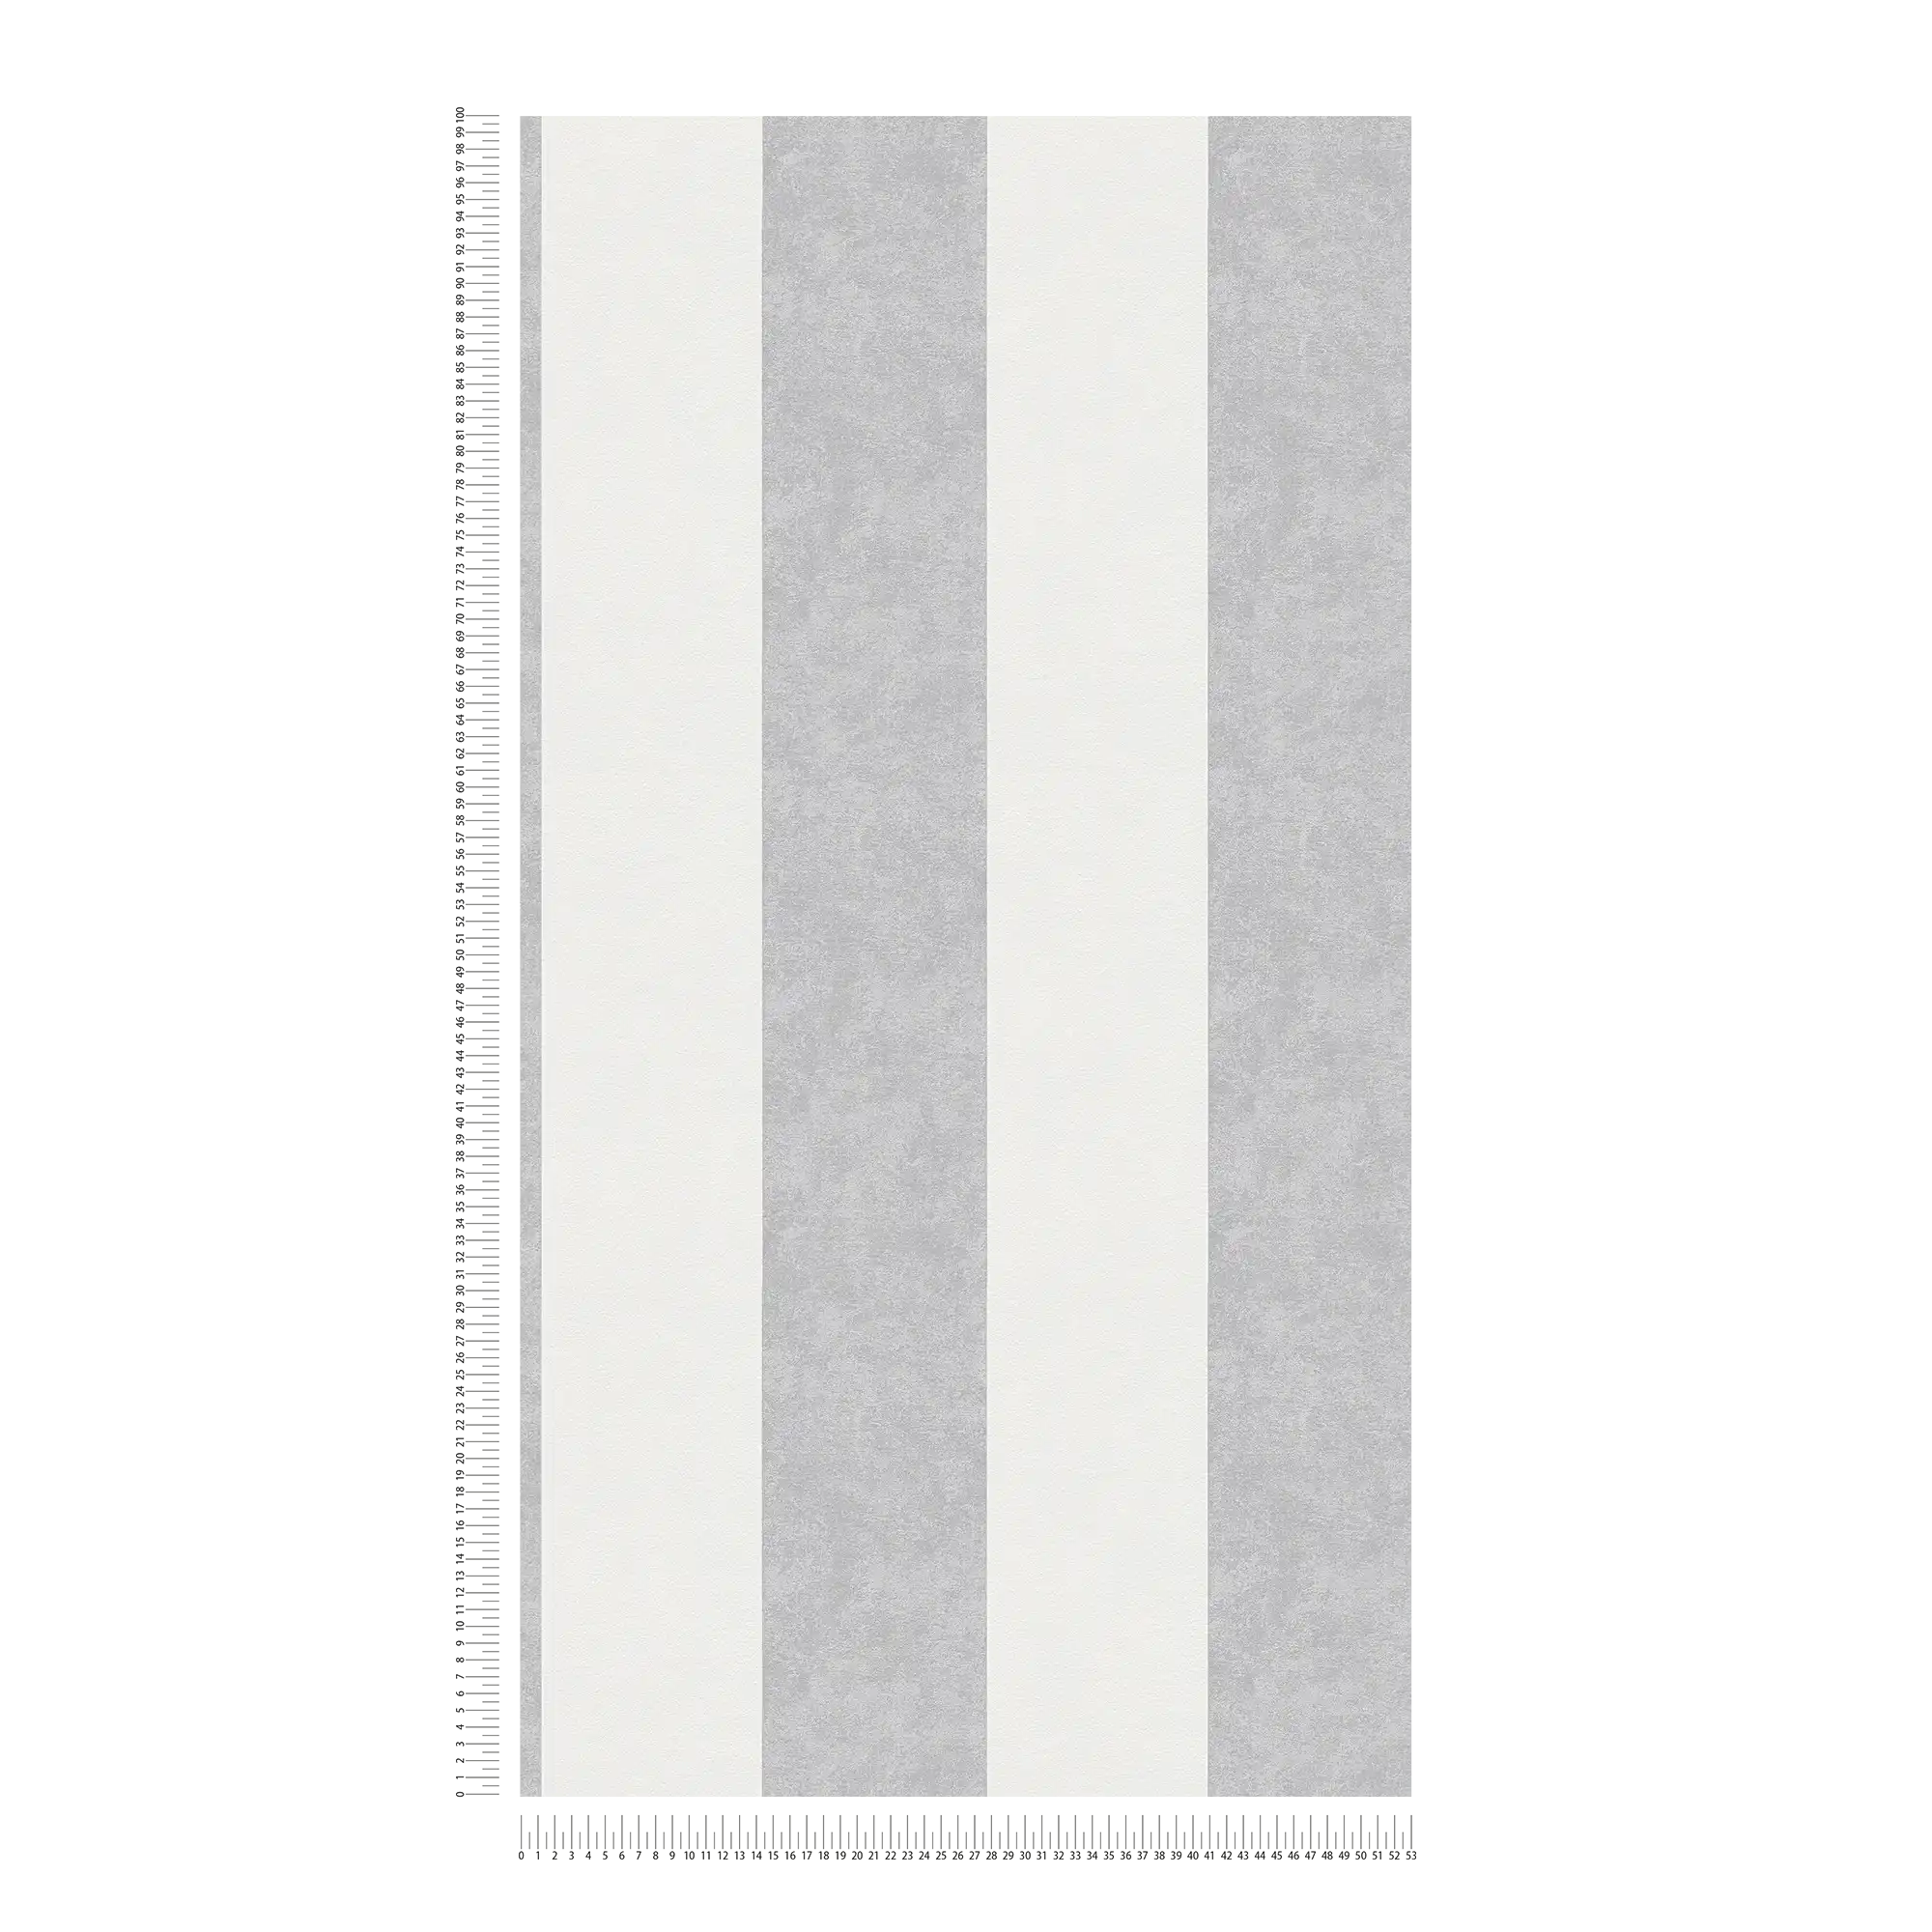             Papel pintado a rayas con textura - gris
        